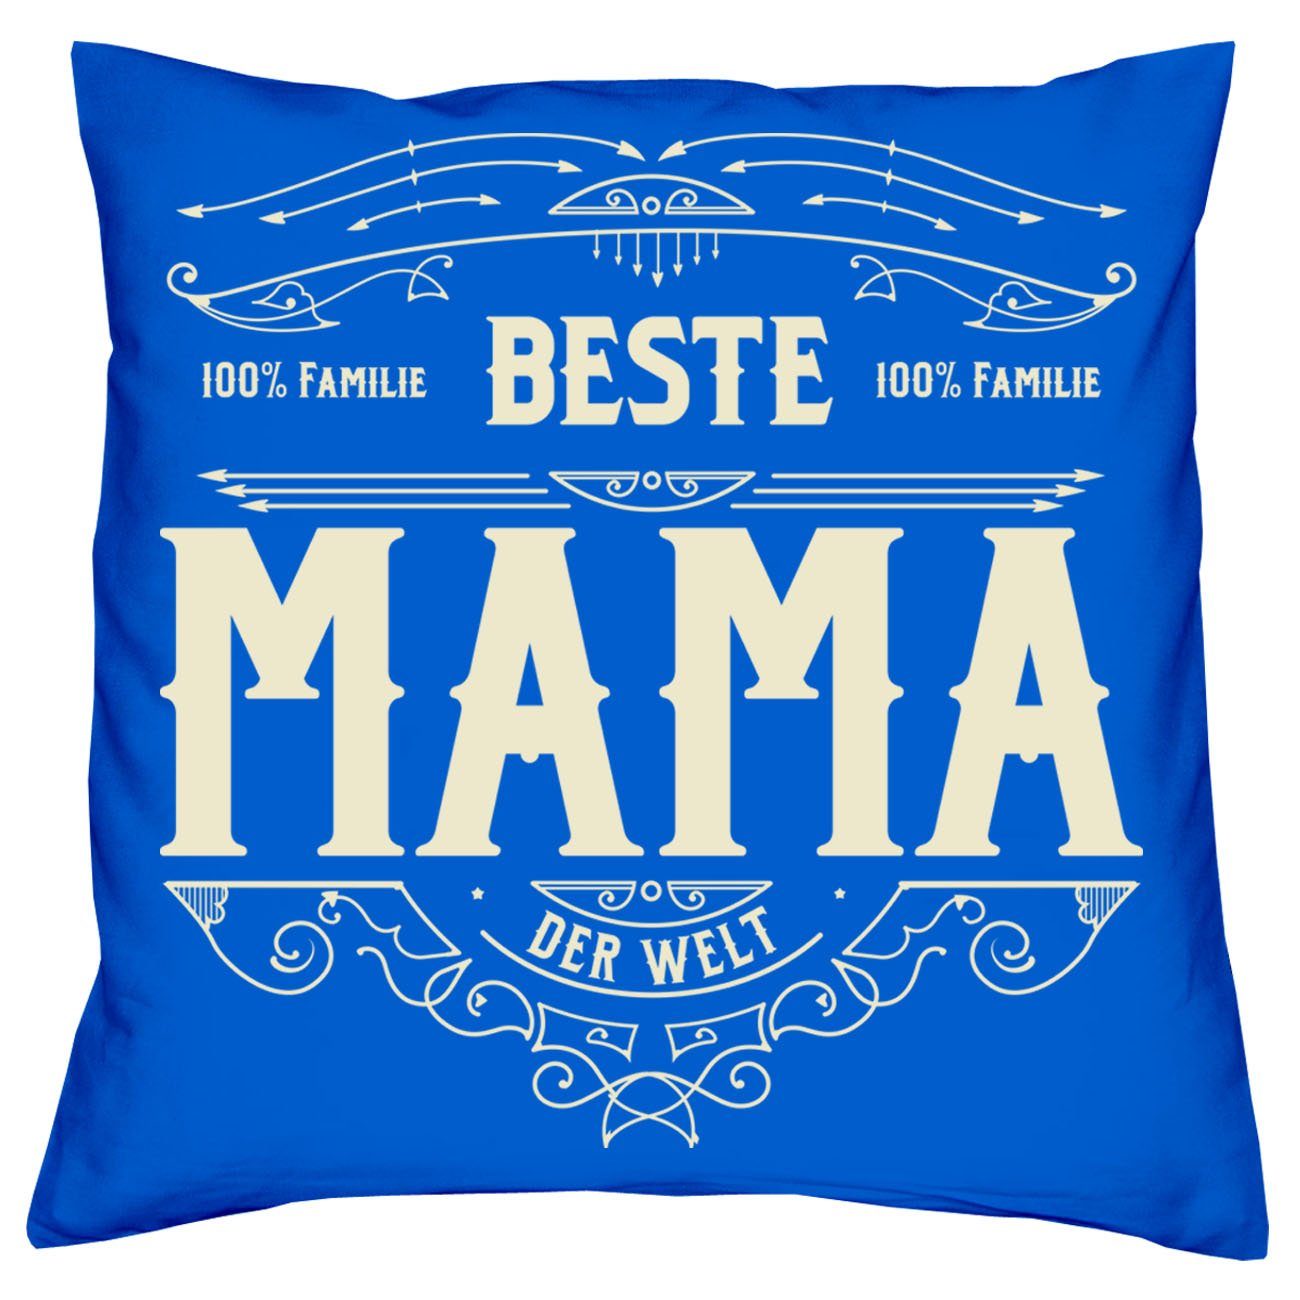 Mama royal-blau Bester Dekokissen Beste Urkunden, mit Eltern für Weihnachtsgeschenk Soreso® Kissen-Set Papa